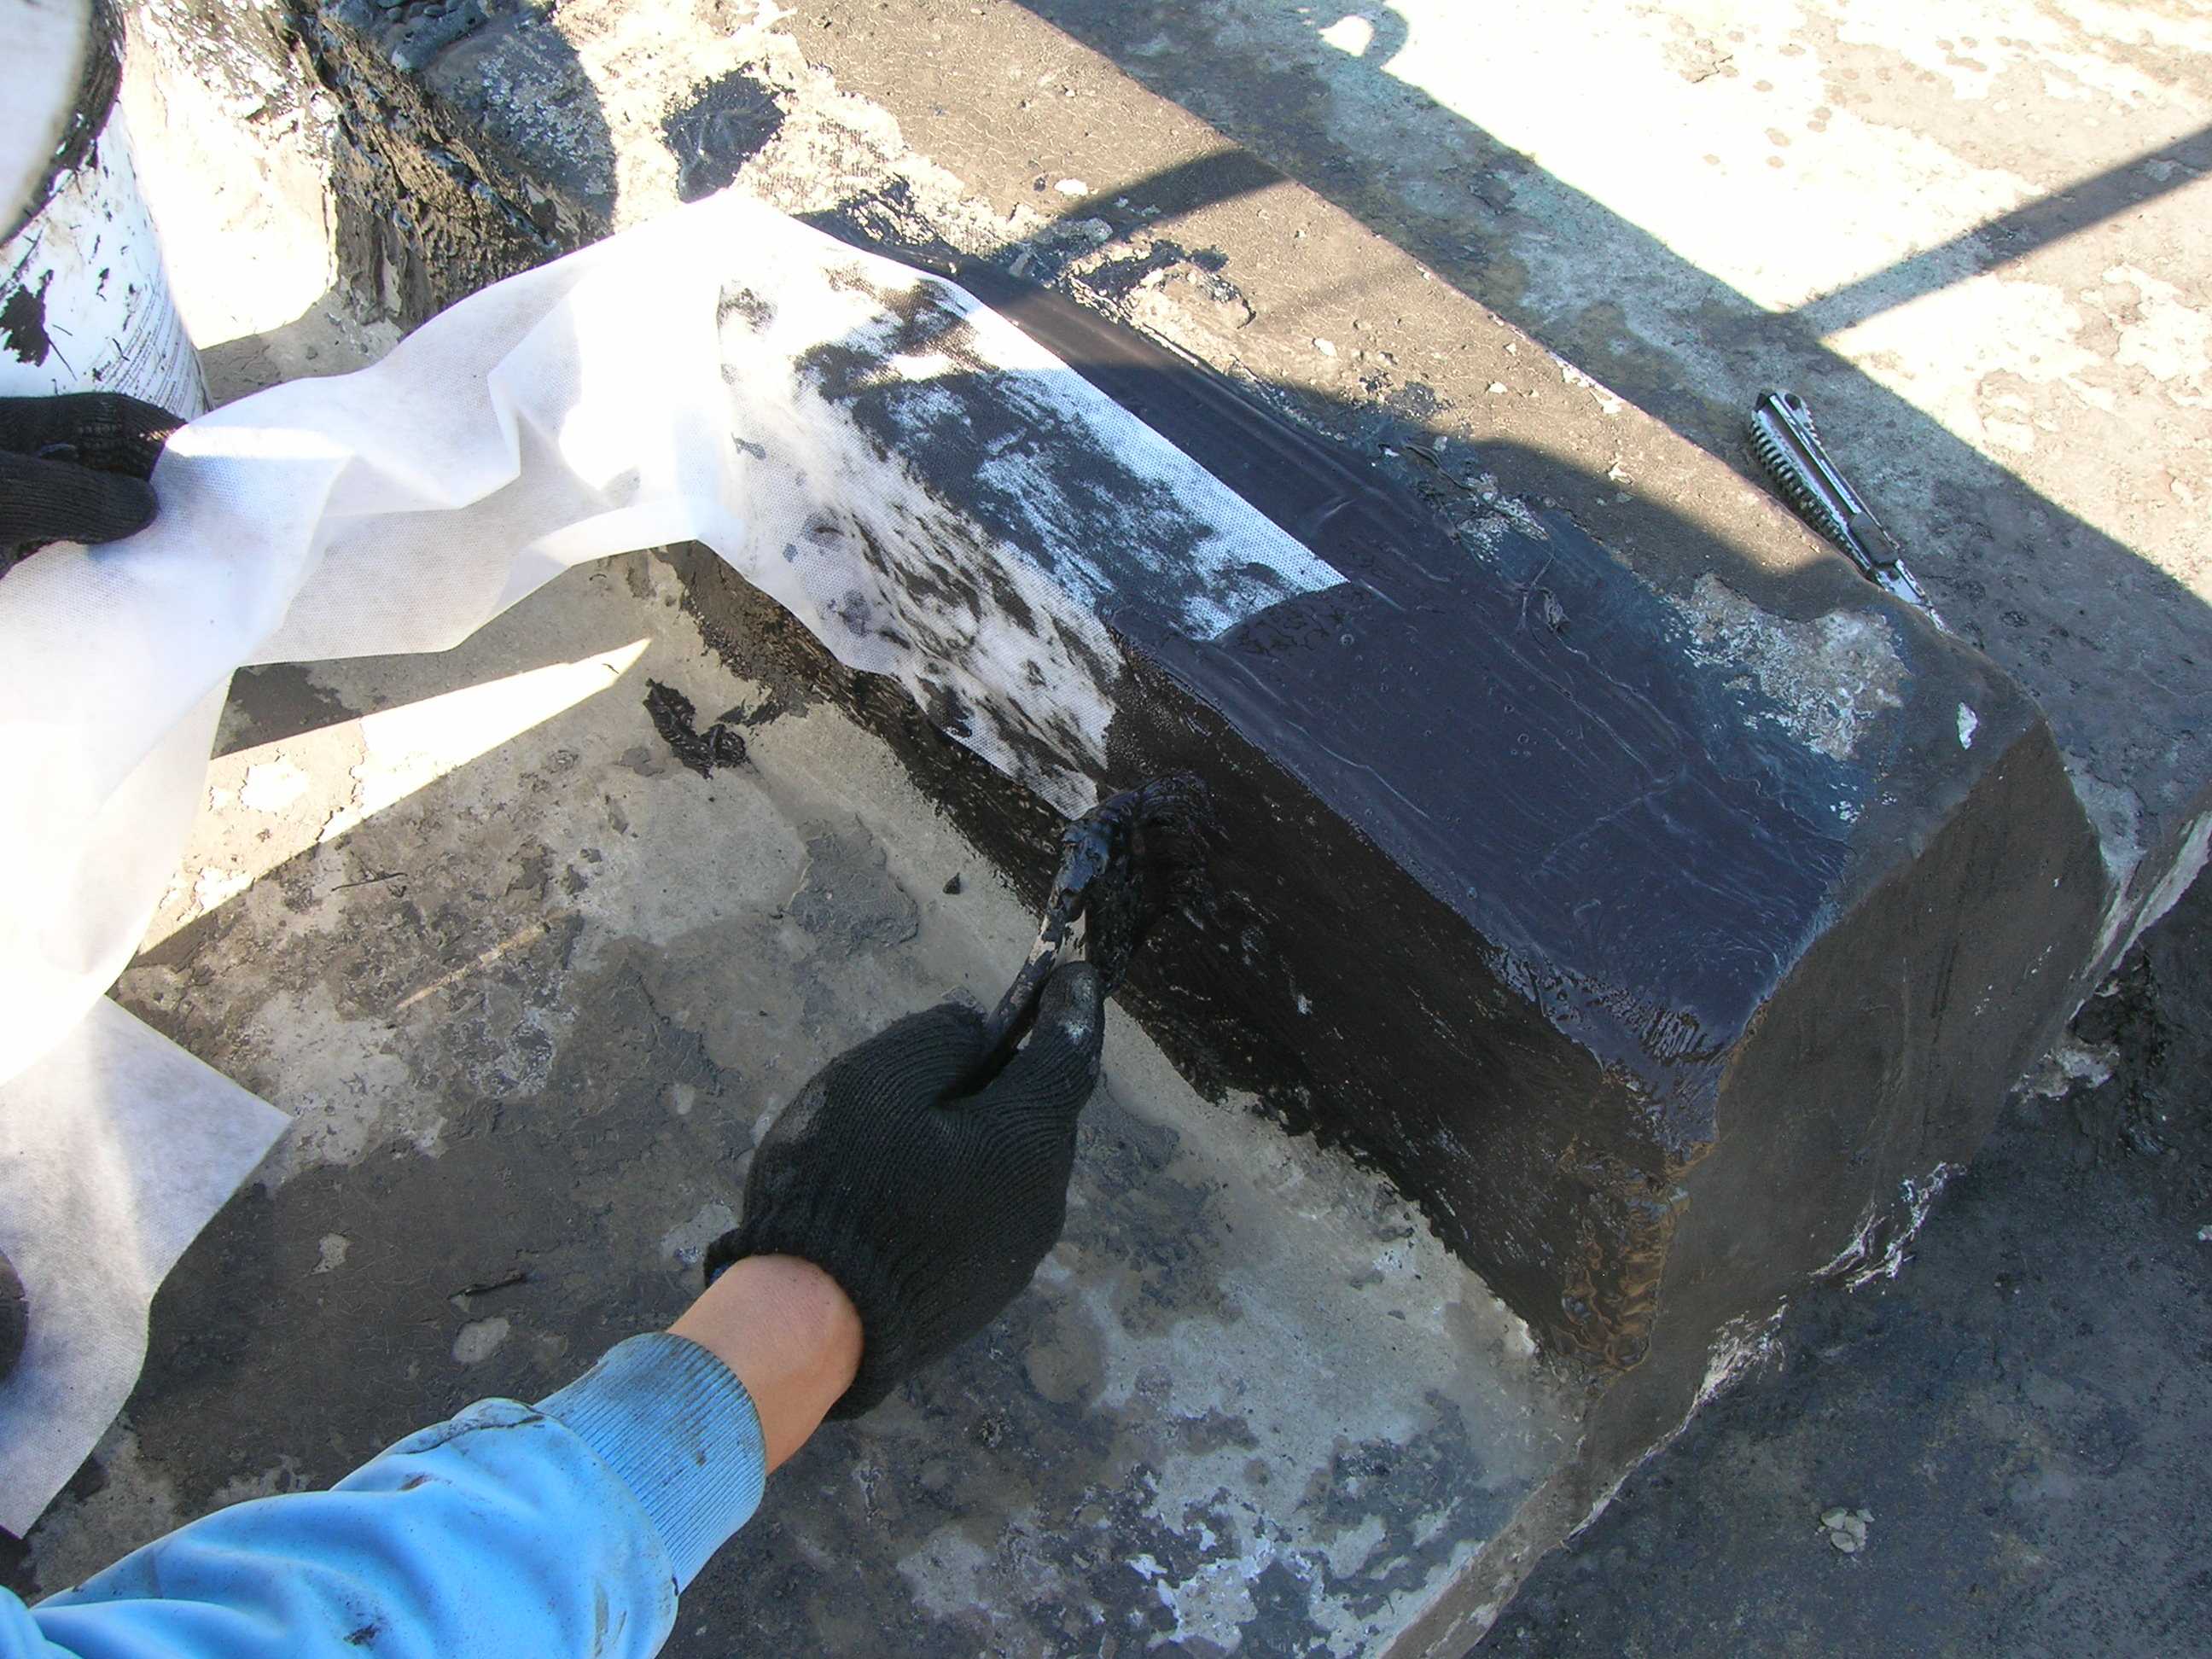 Жидкая гидроизоляция для бетона